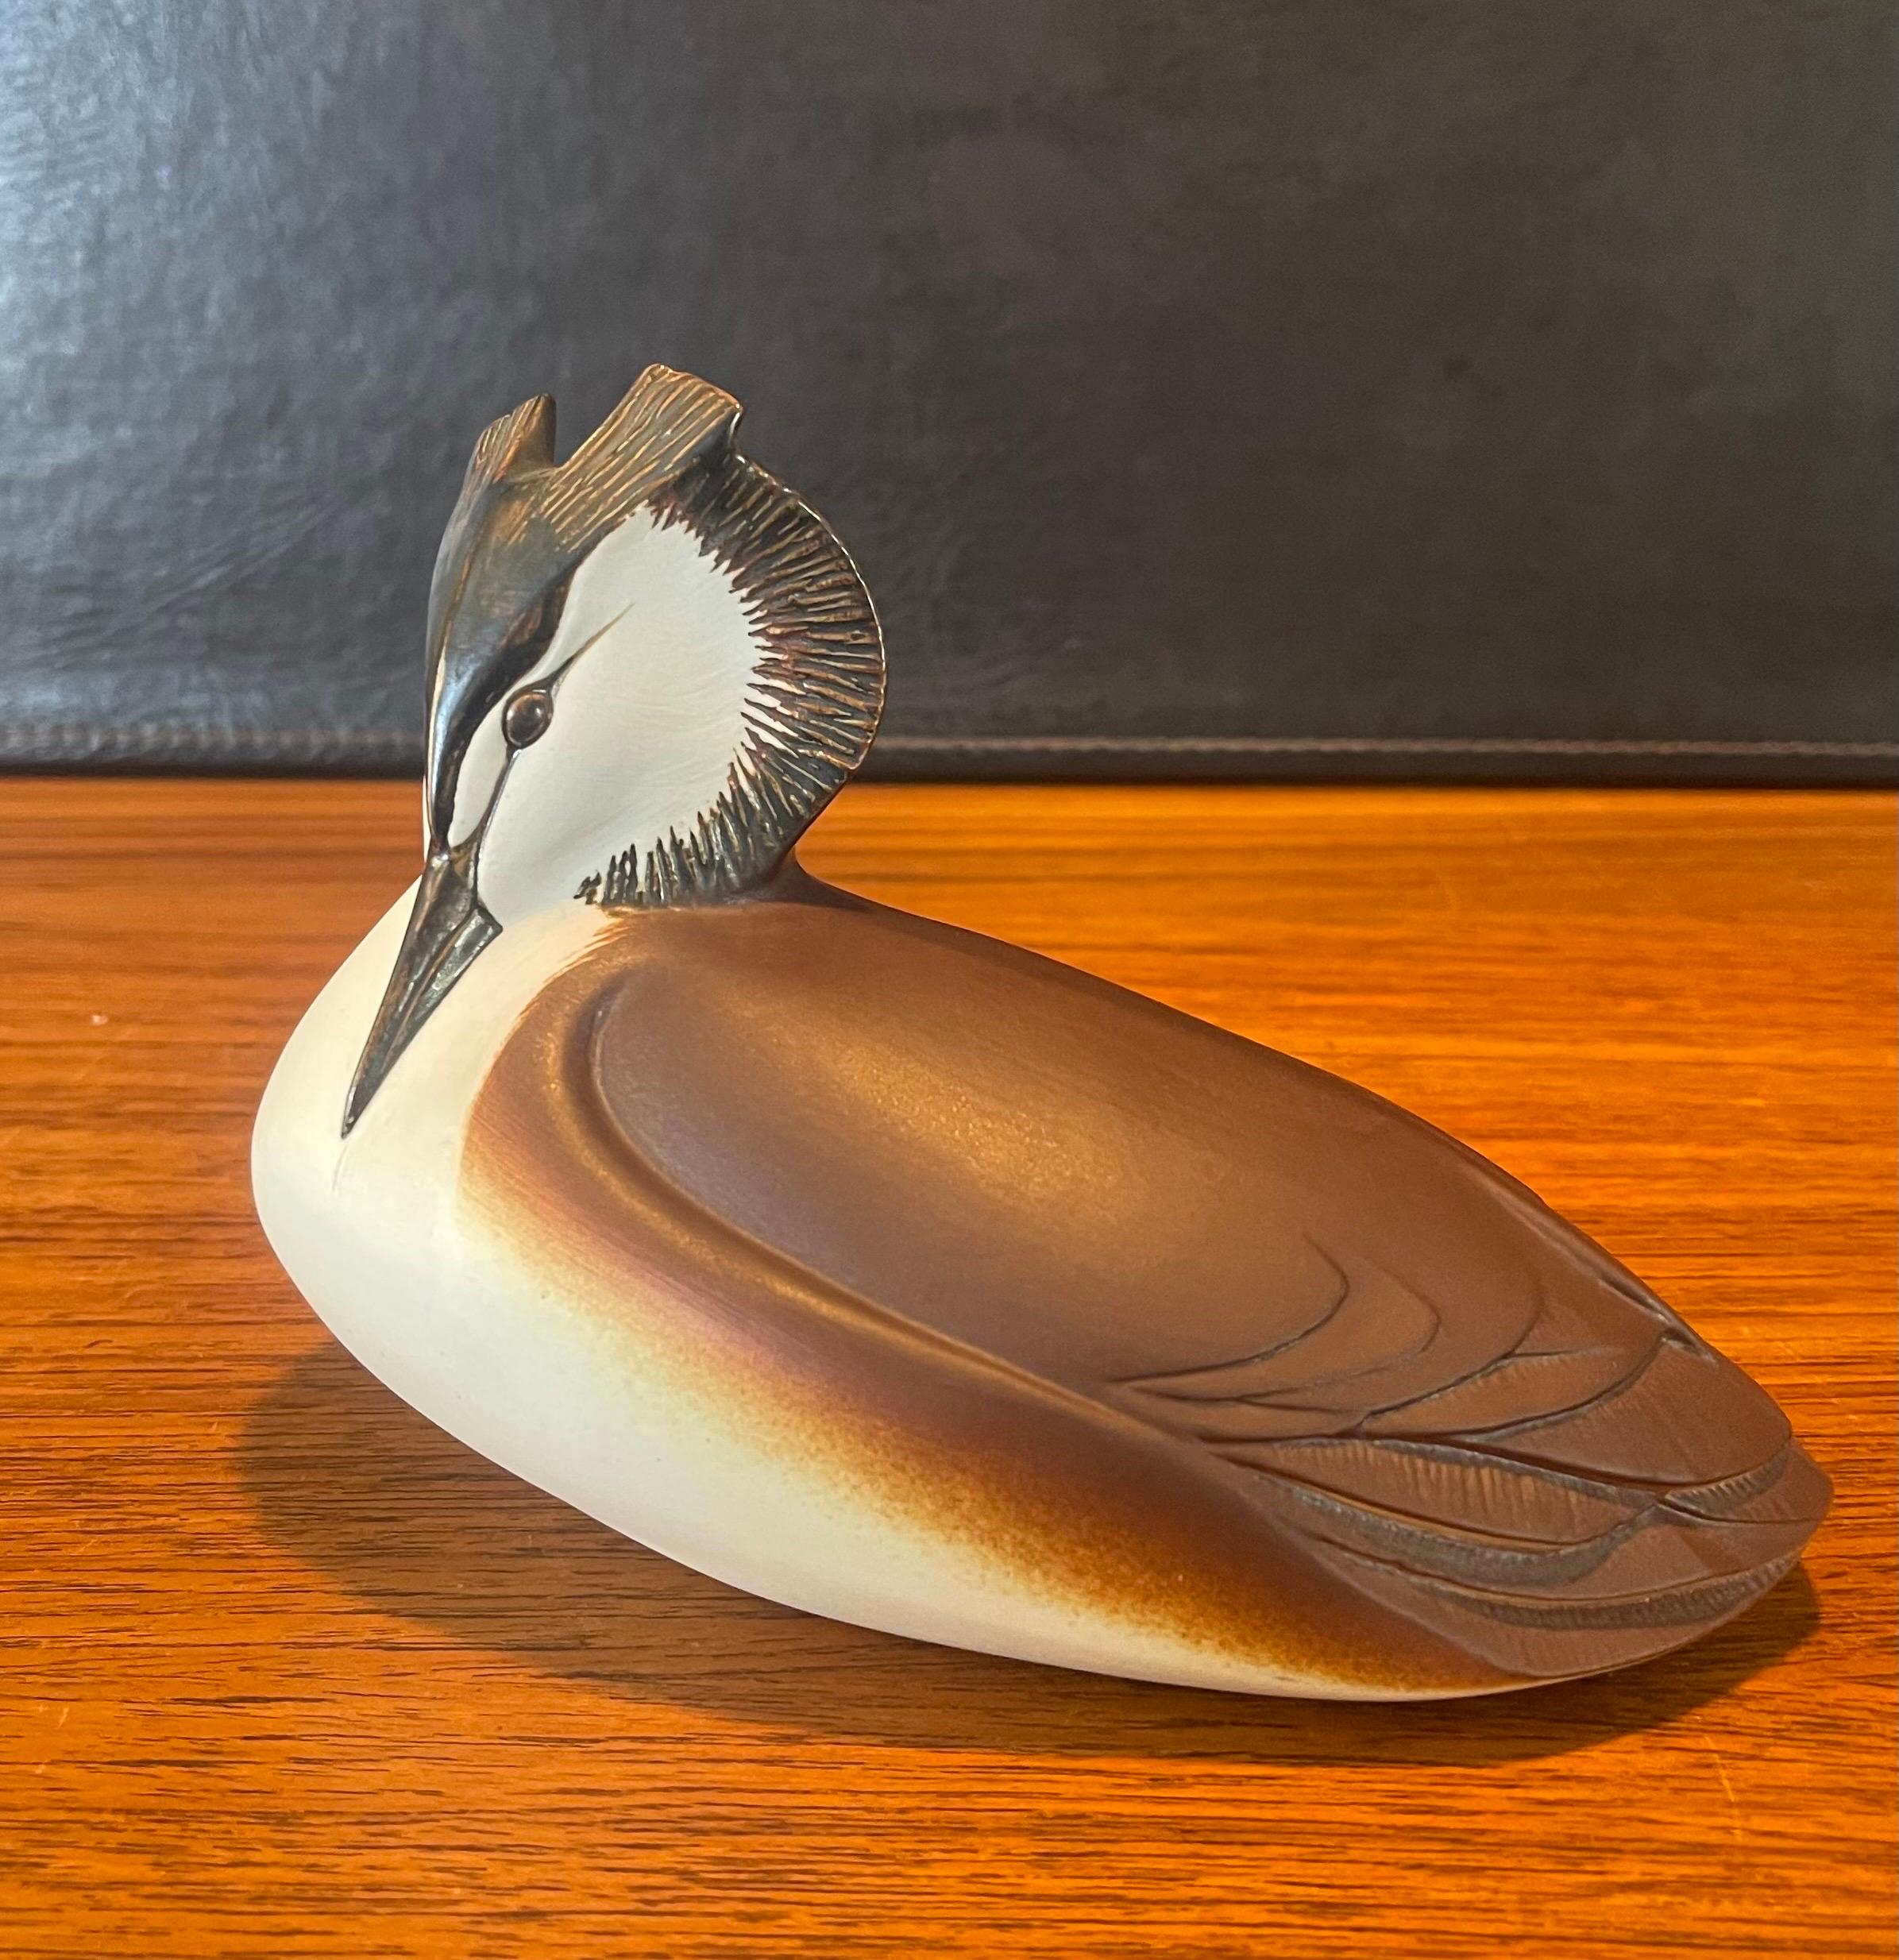 Vintage MCM ceramiche bird sculpture by Paul Hoff, circa 1960s. La pièce est en très bon état vintage, avec de superbes couleurs et textures ; elle serait un ajout fantastique à toute collection du milieu du siècle. L'oiseau mesure 7